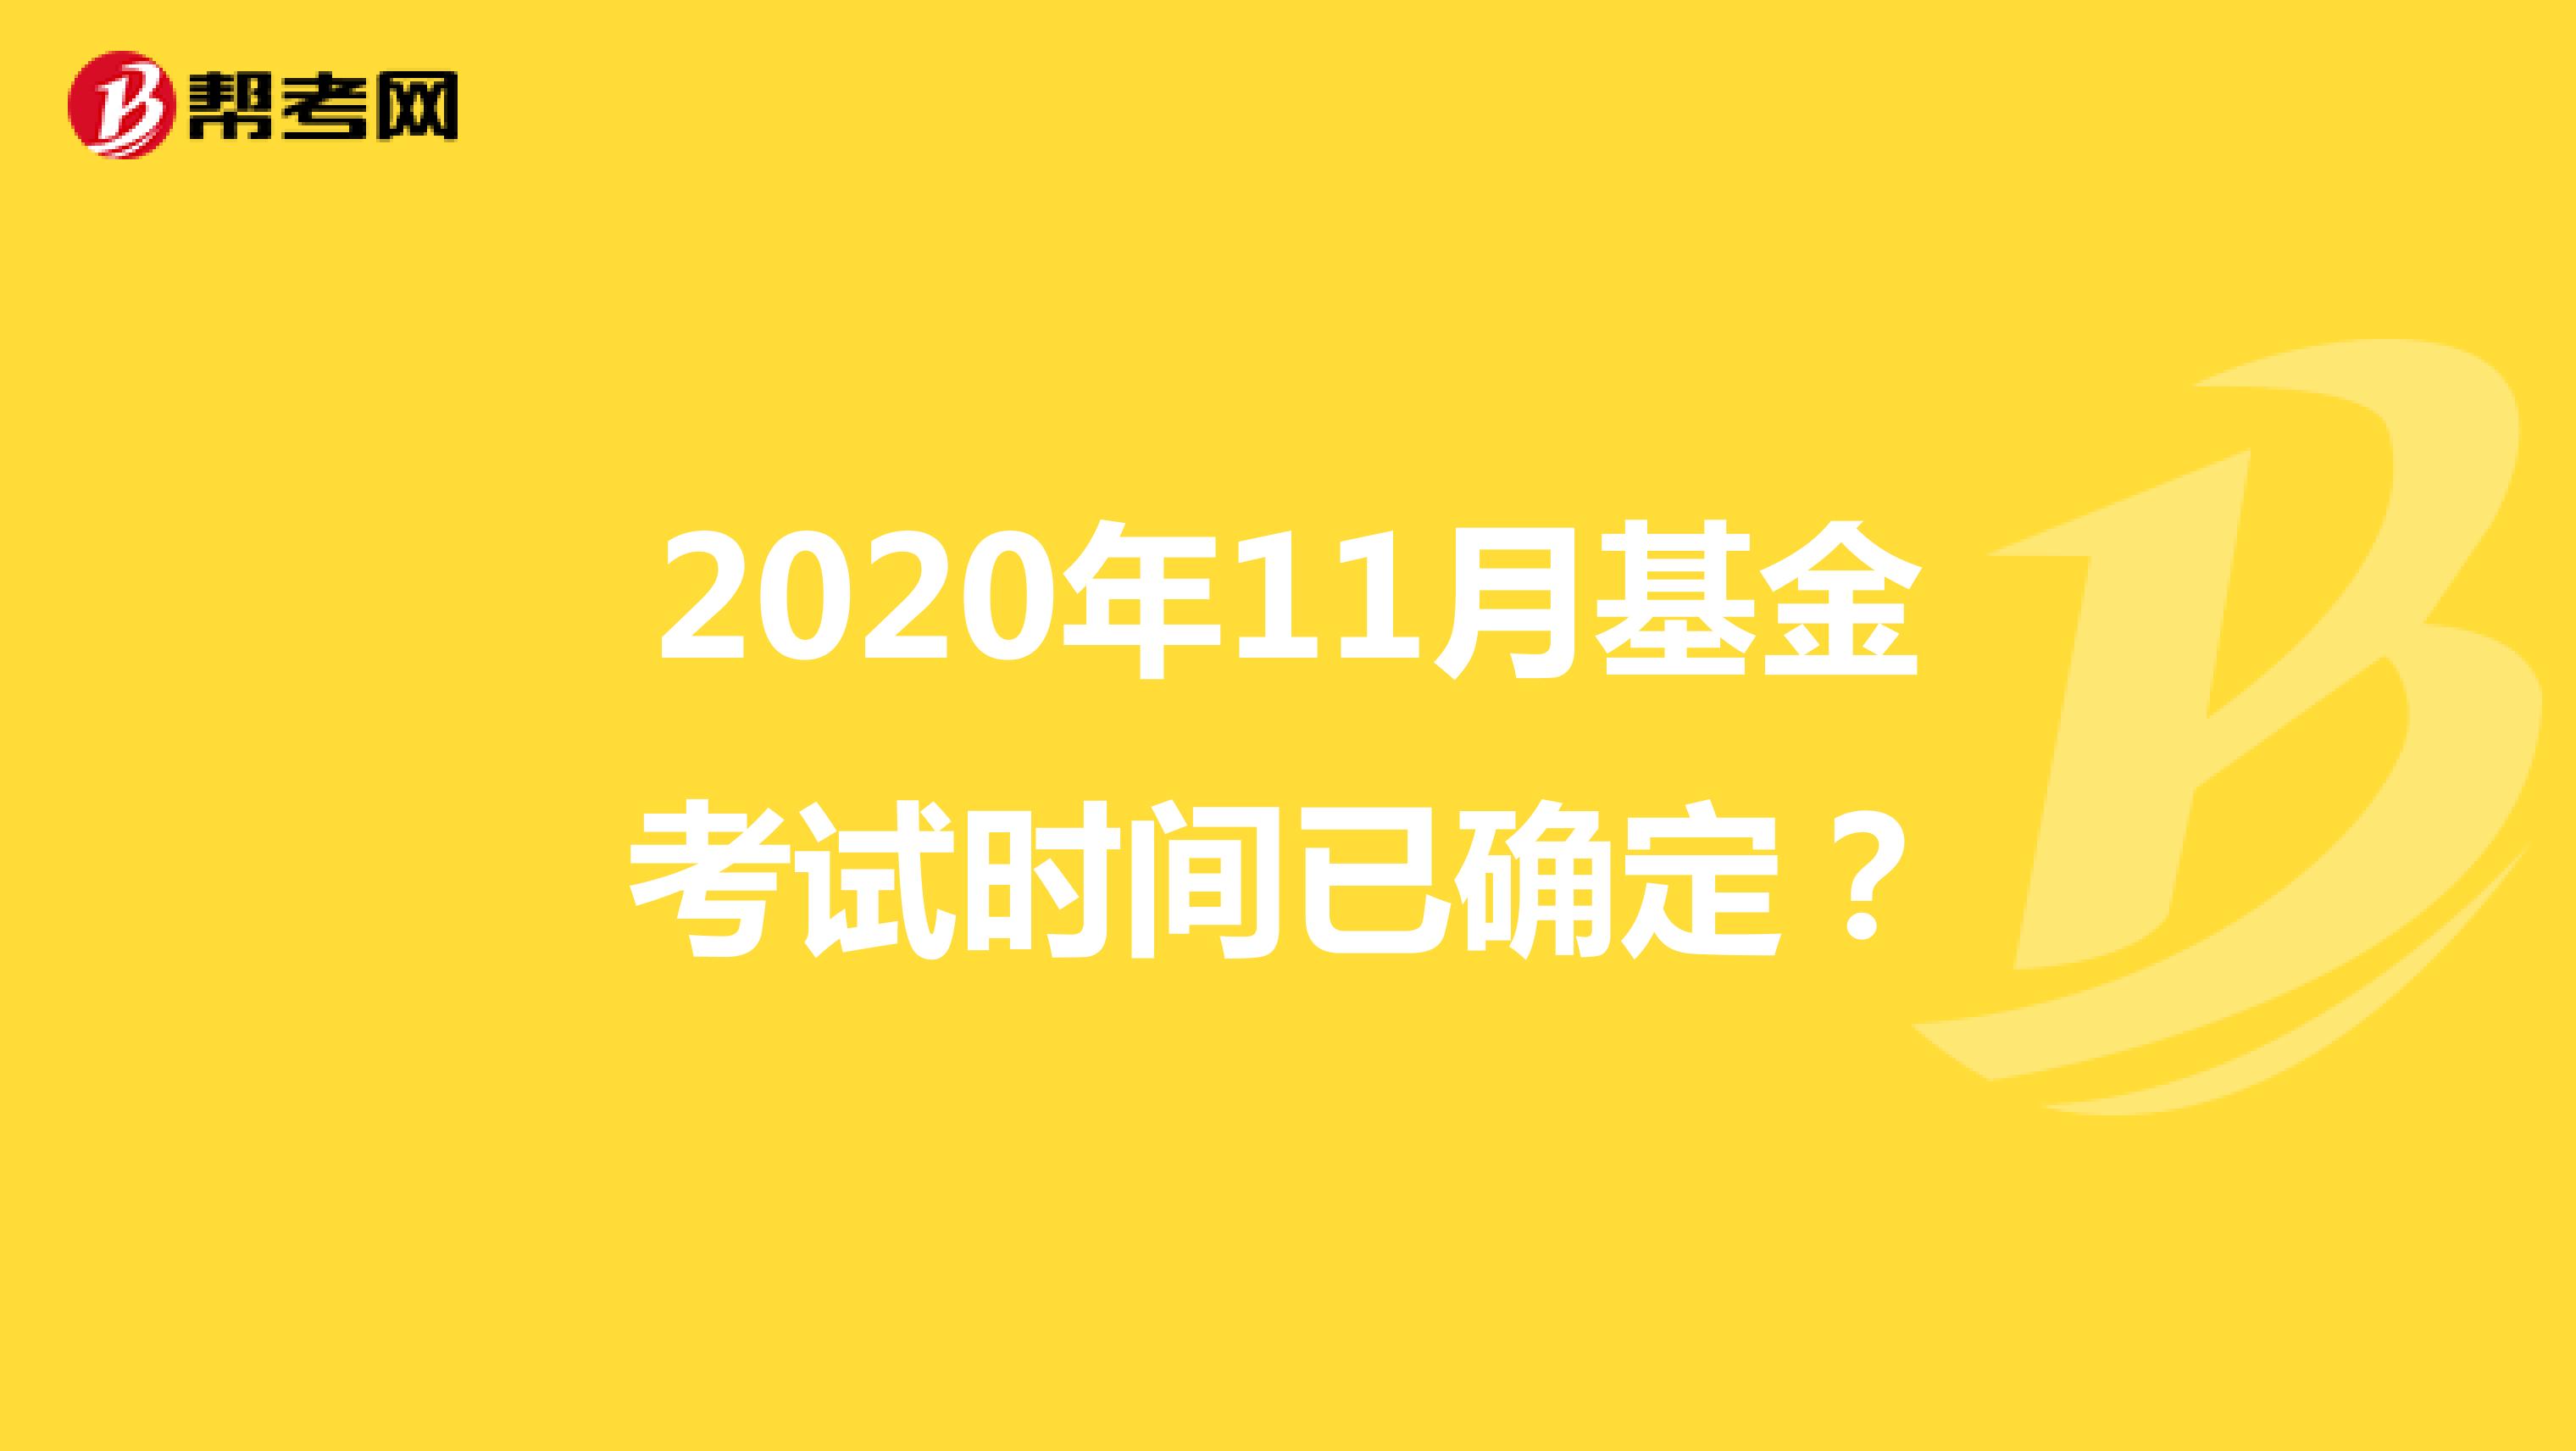 2020年11月基金考试时间已确定？